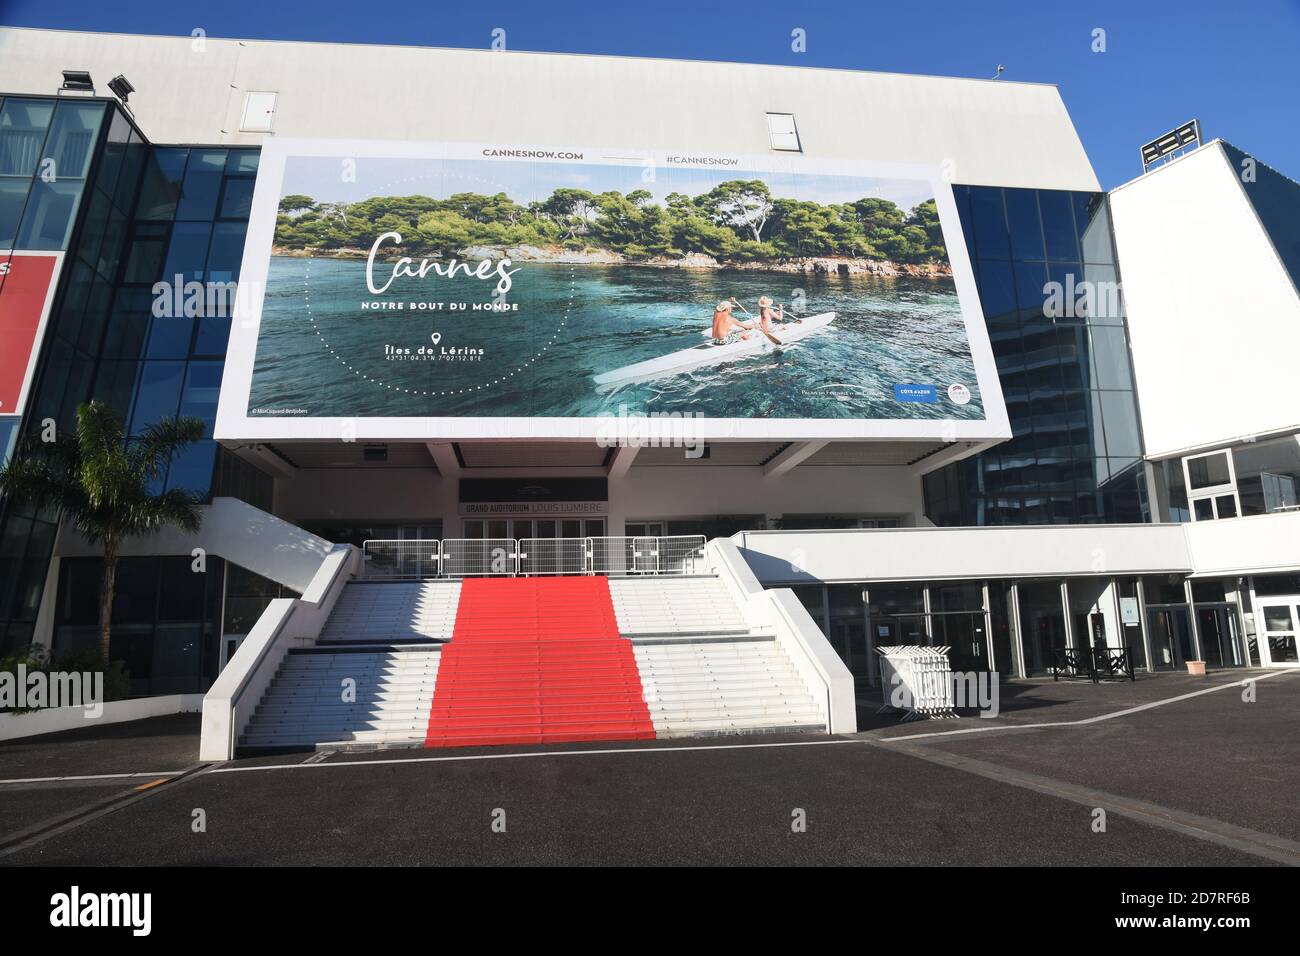 Francia, costa azzurra, Cannes, il Palazzo del Festival con il suo famoso tappeto rosso, dove ogni anno si svolge il famoso Festival Internazionale del Cinema. Foto Stock